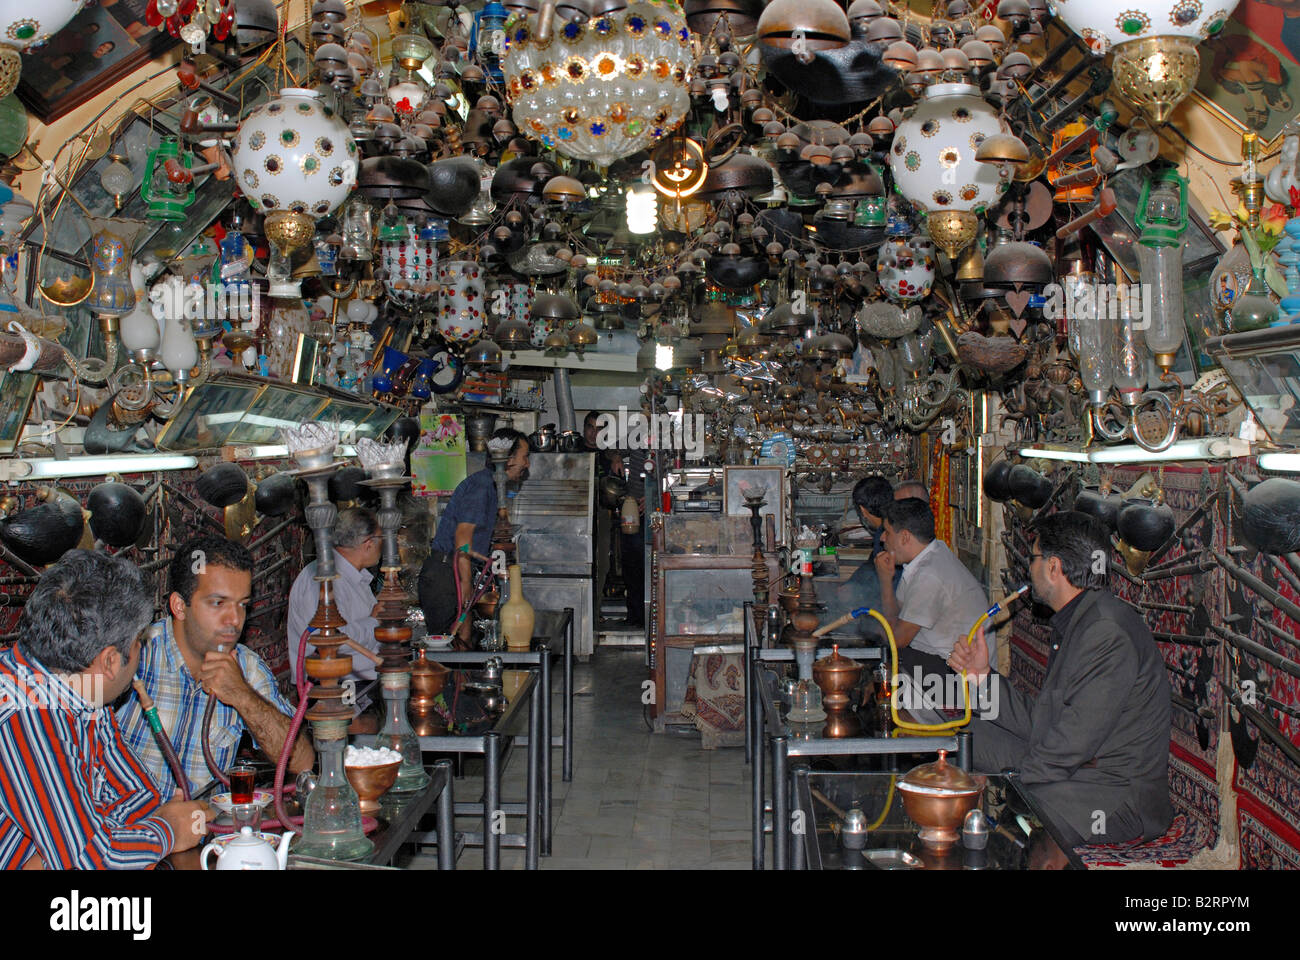 L'Iran Ispahan - un magasin de thé dans lequel des objets d'art ancienne affiche pour la décoration (Hukkah narguilé) Banque D'Images